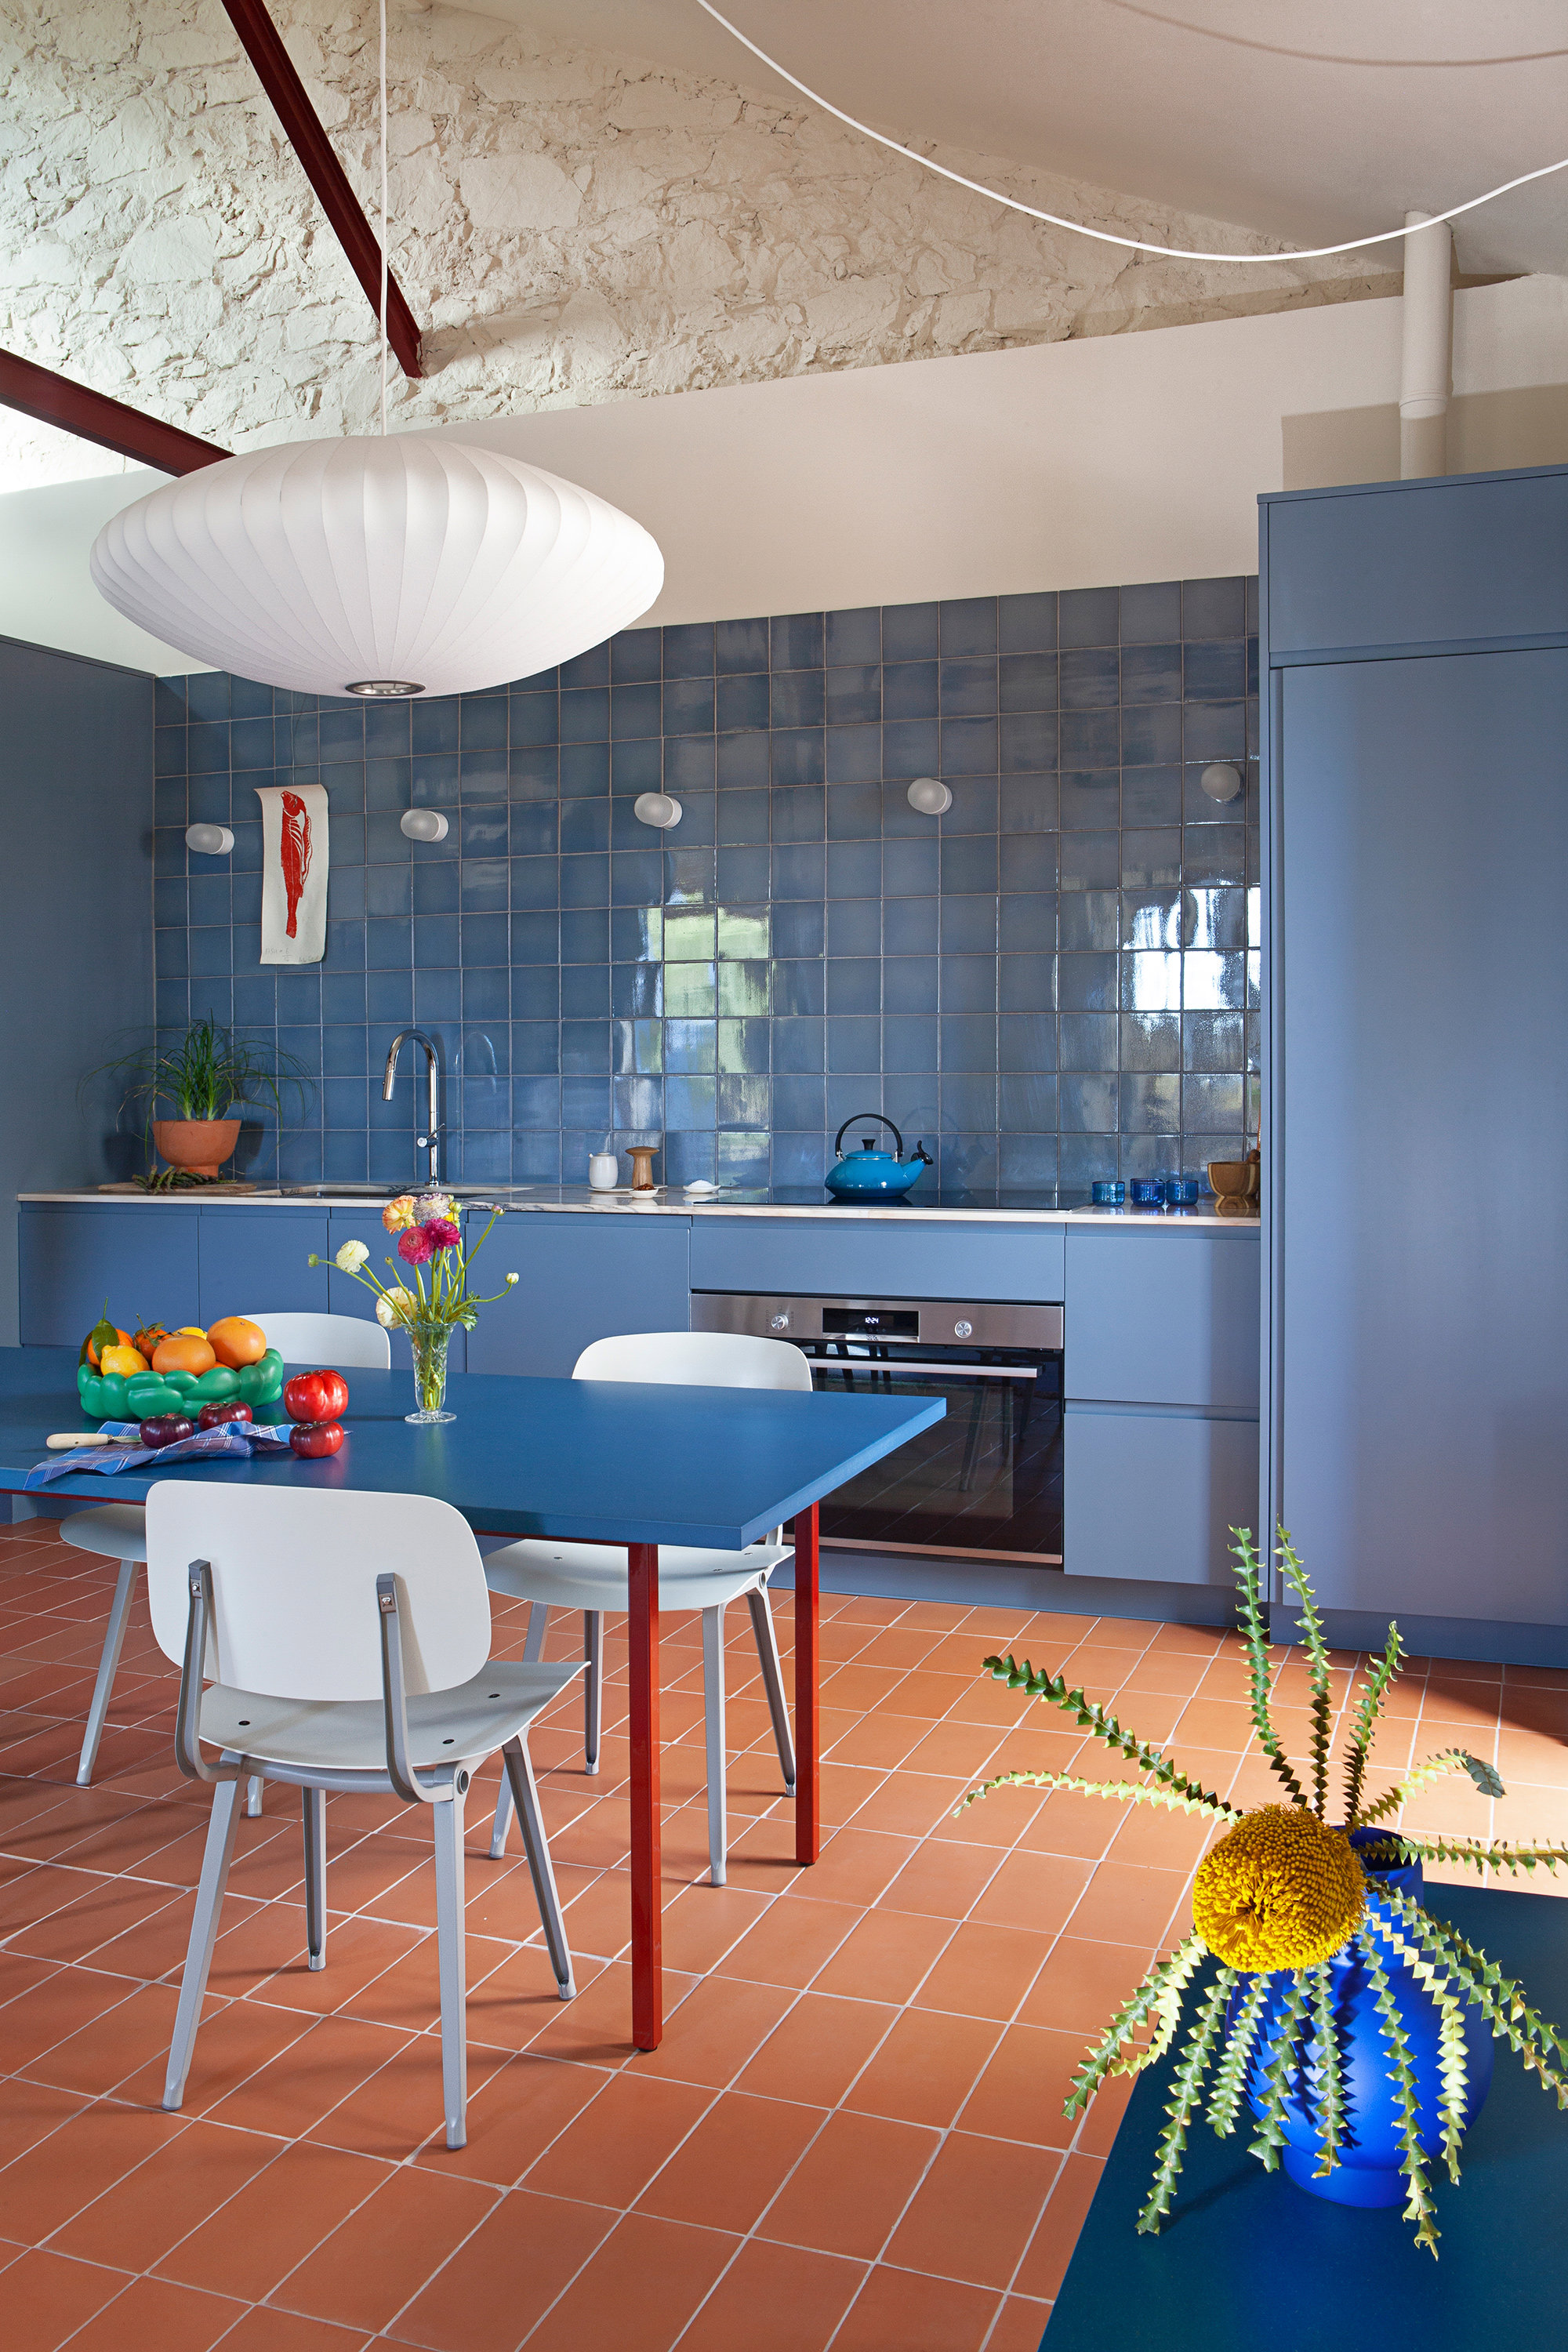 El azul de la cocina contrasta con los tonos cálidos de las baldosas de arcilla del suelo.